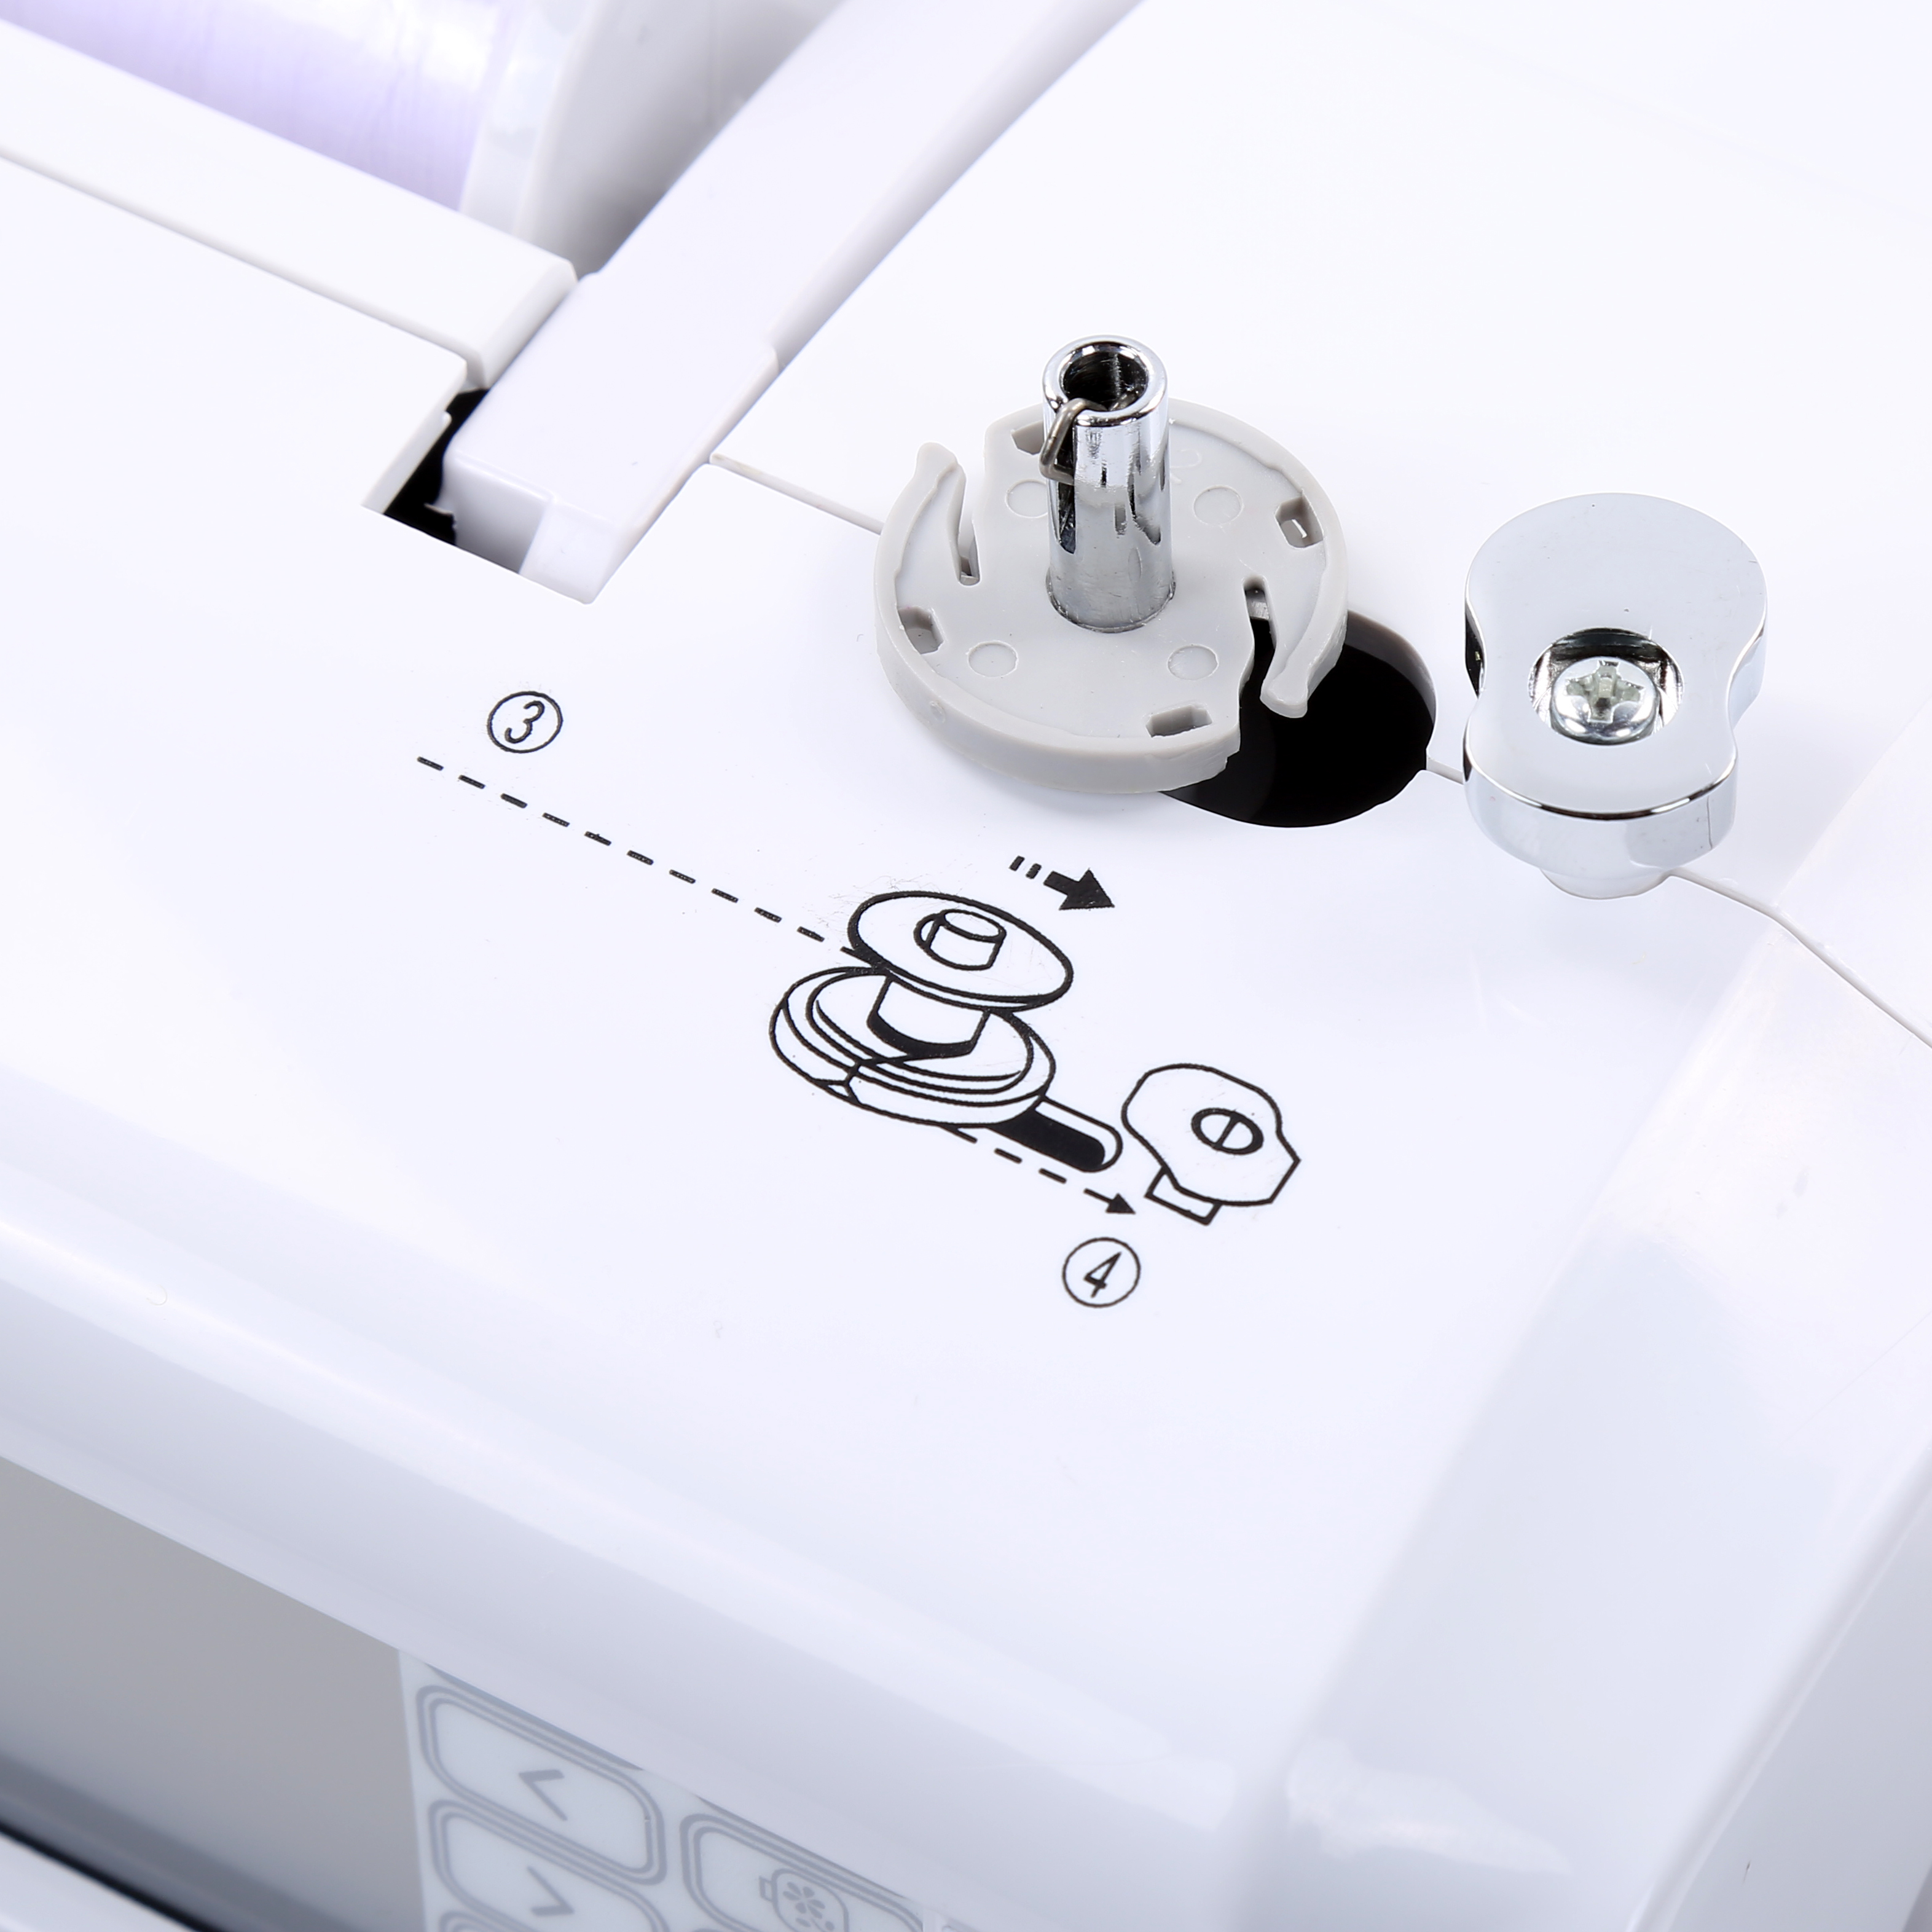 Máquina de coser portátil de BAI Mejor máquina de coser para gancho rotativo NUEVA MÁQUINA DE COSTURA HOME